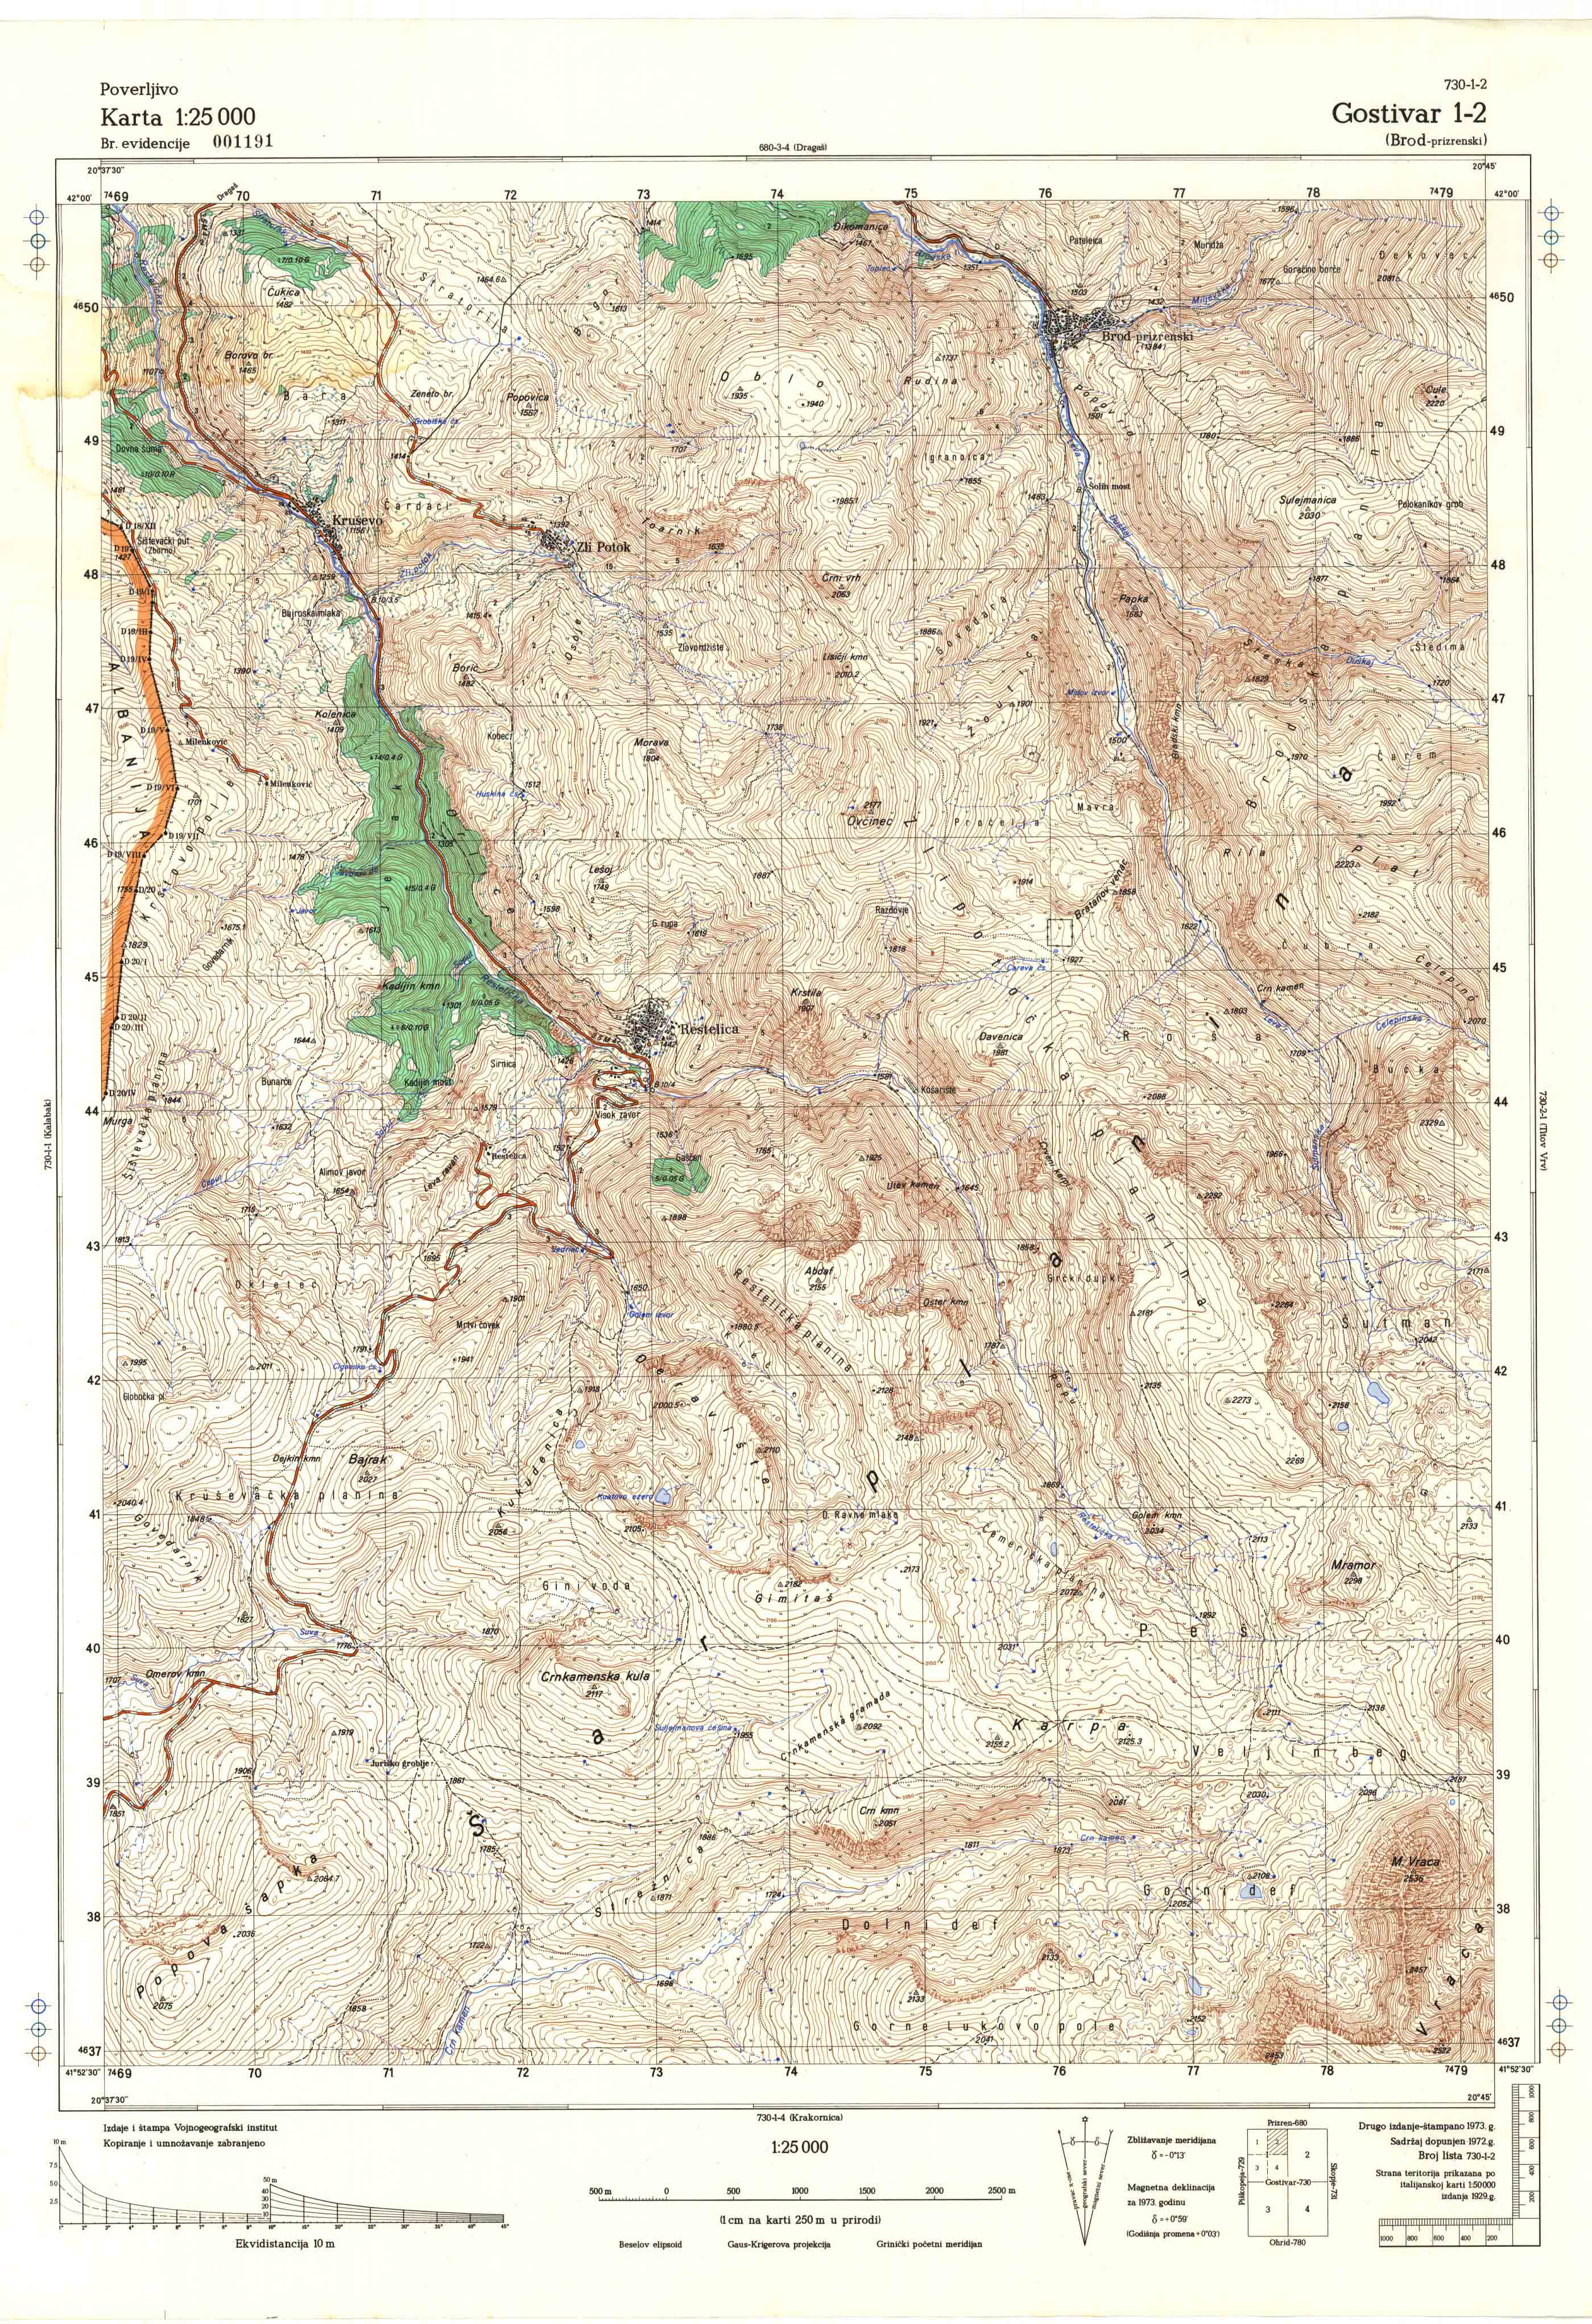  topografska karta Makedonije 25000 JNA  Gostivar